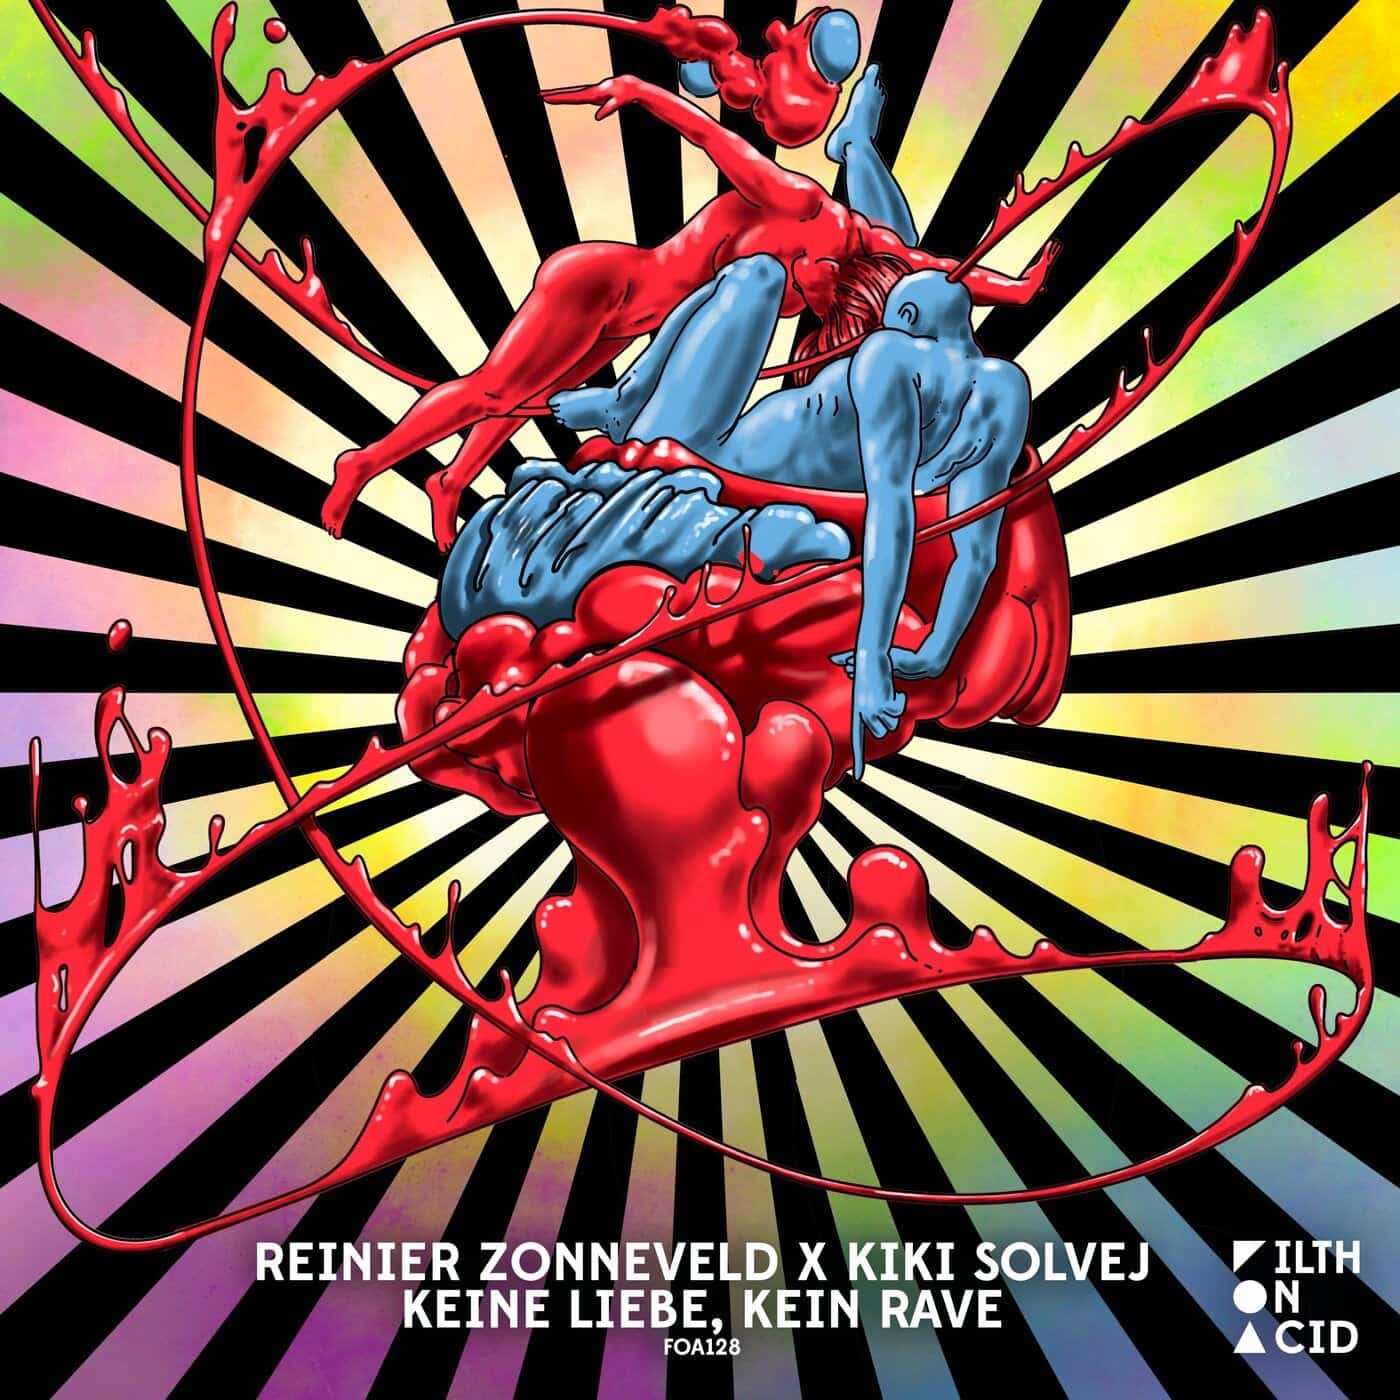 image cover: Kiki Solvej - Keine Liebe, Kein Rave / FOA128